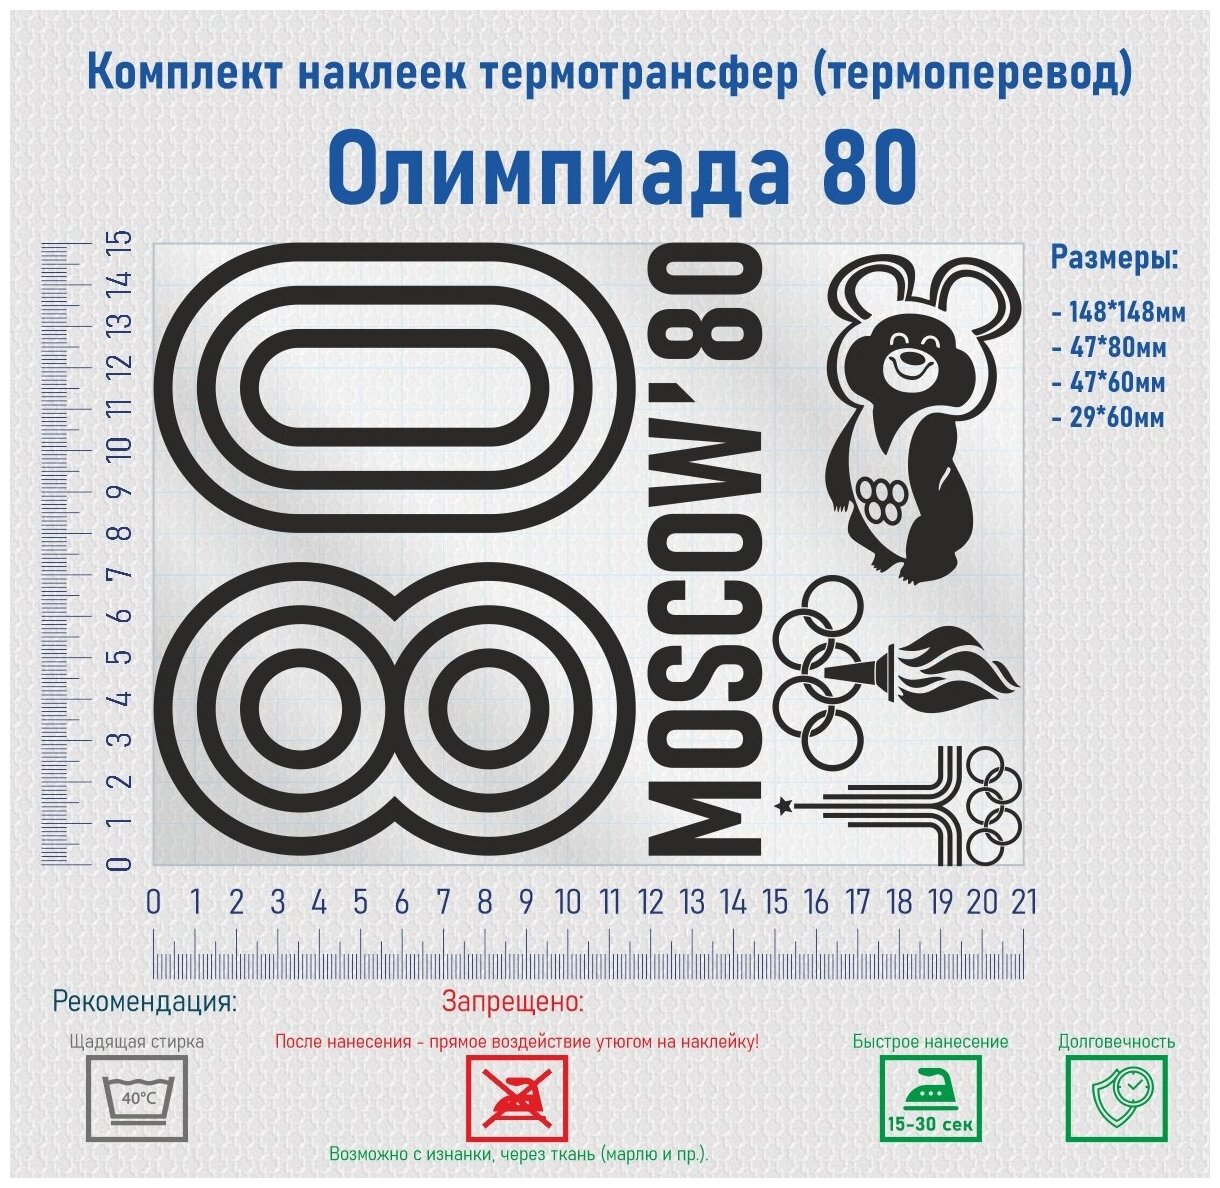 Комплект наклеек на одежду термотрансфер (термоперенос) Олимпиада 80 (80 Moscow)